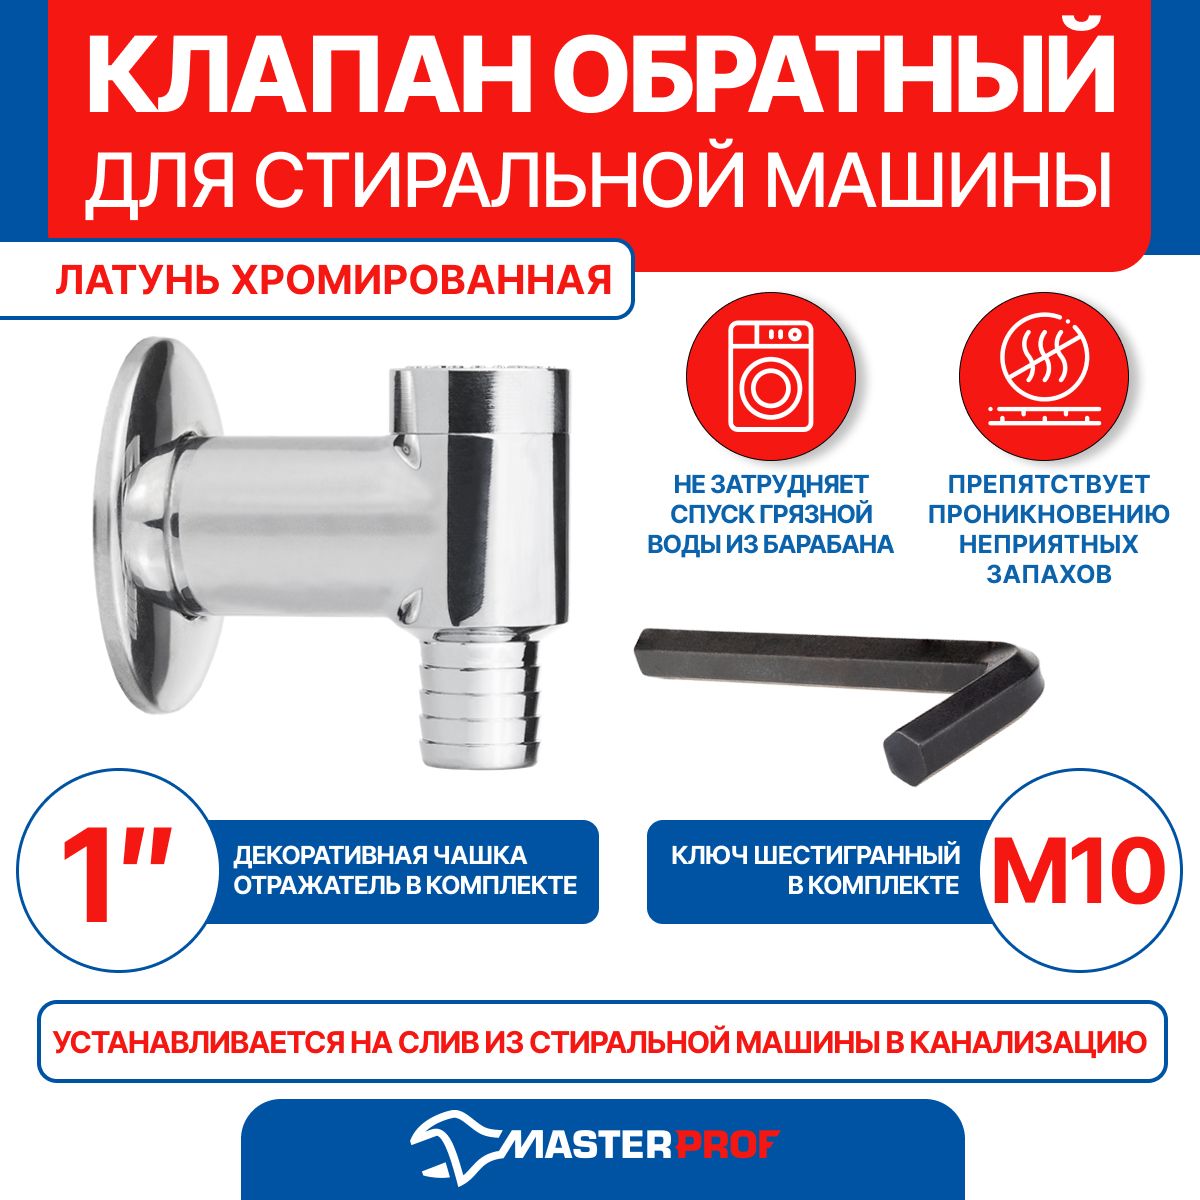 Клапан обратный для MasterProf стиральной машины белый - купить по цене руб. в Москве и РФ